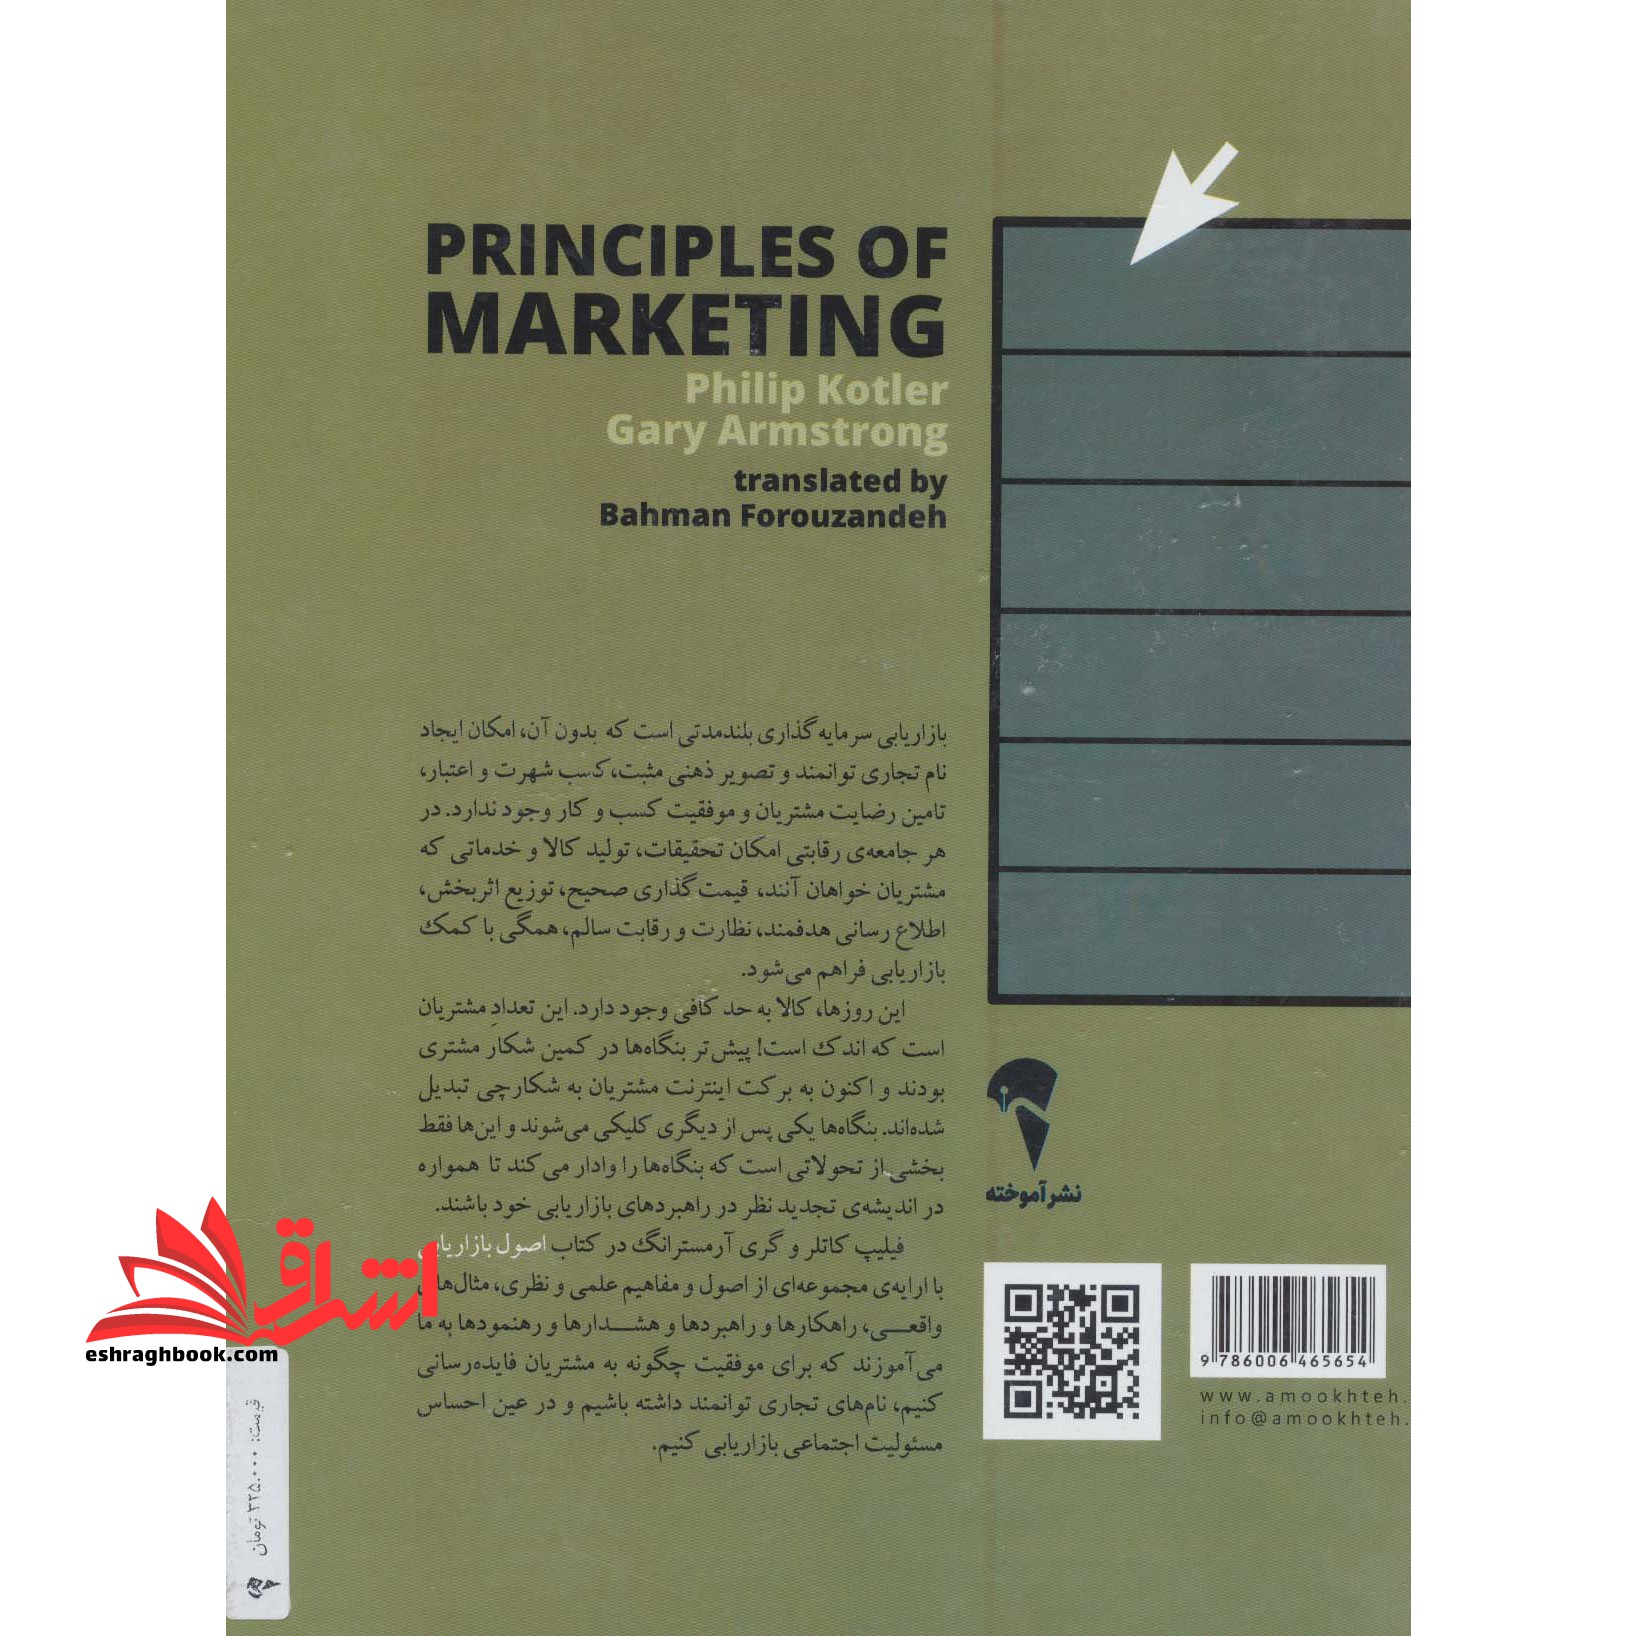 اصول بازاریابی جلد ۲ دوم (همراه با مطالعات موردی، پیوست ها، تصاویر و خلاصه فصول)